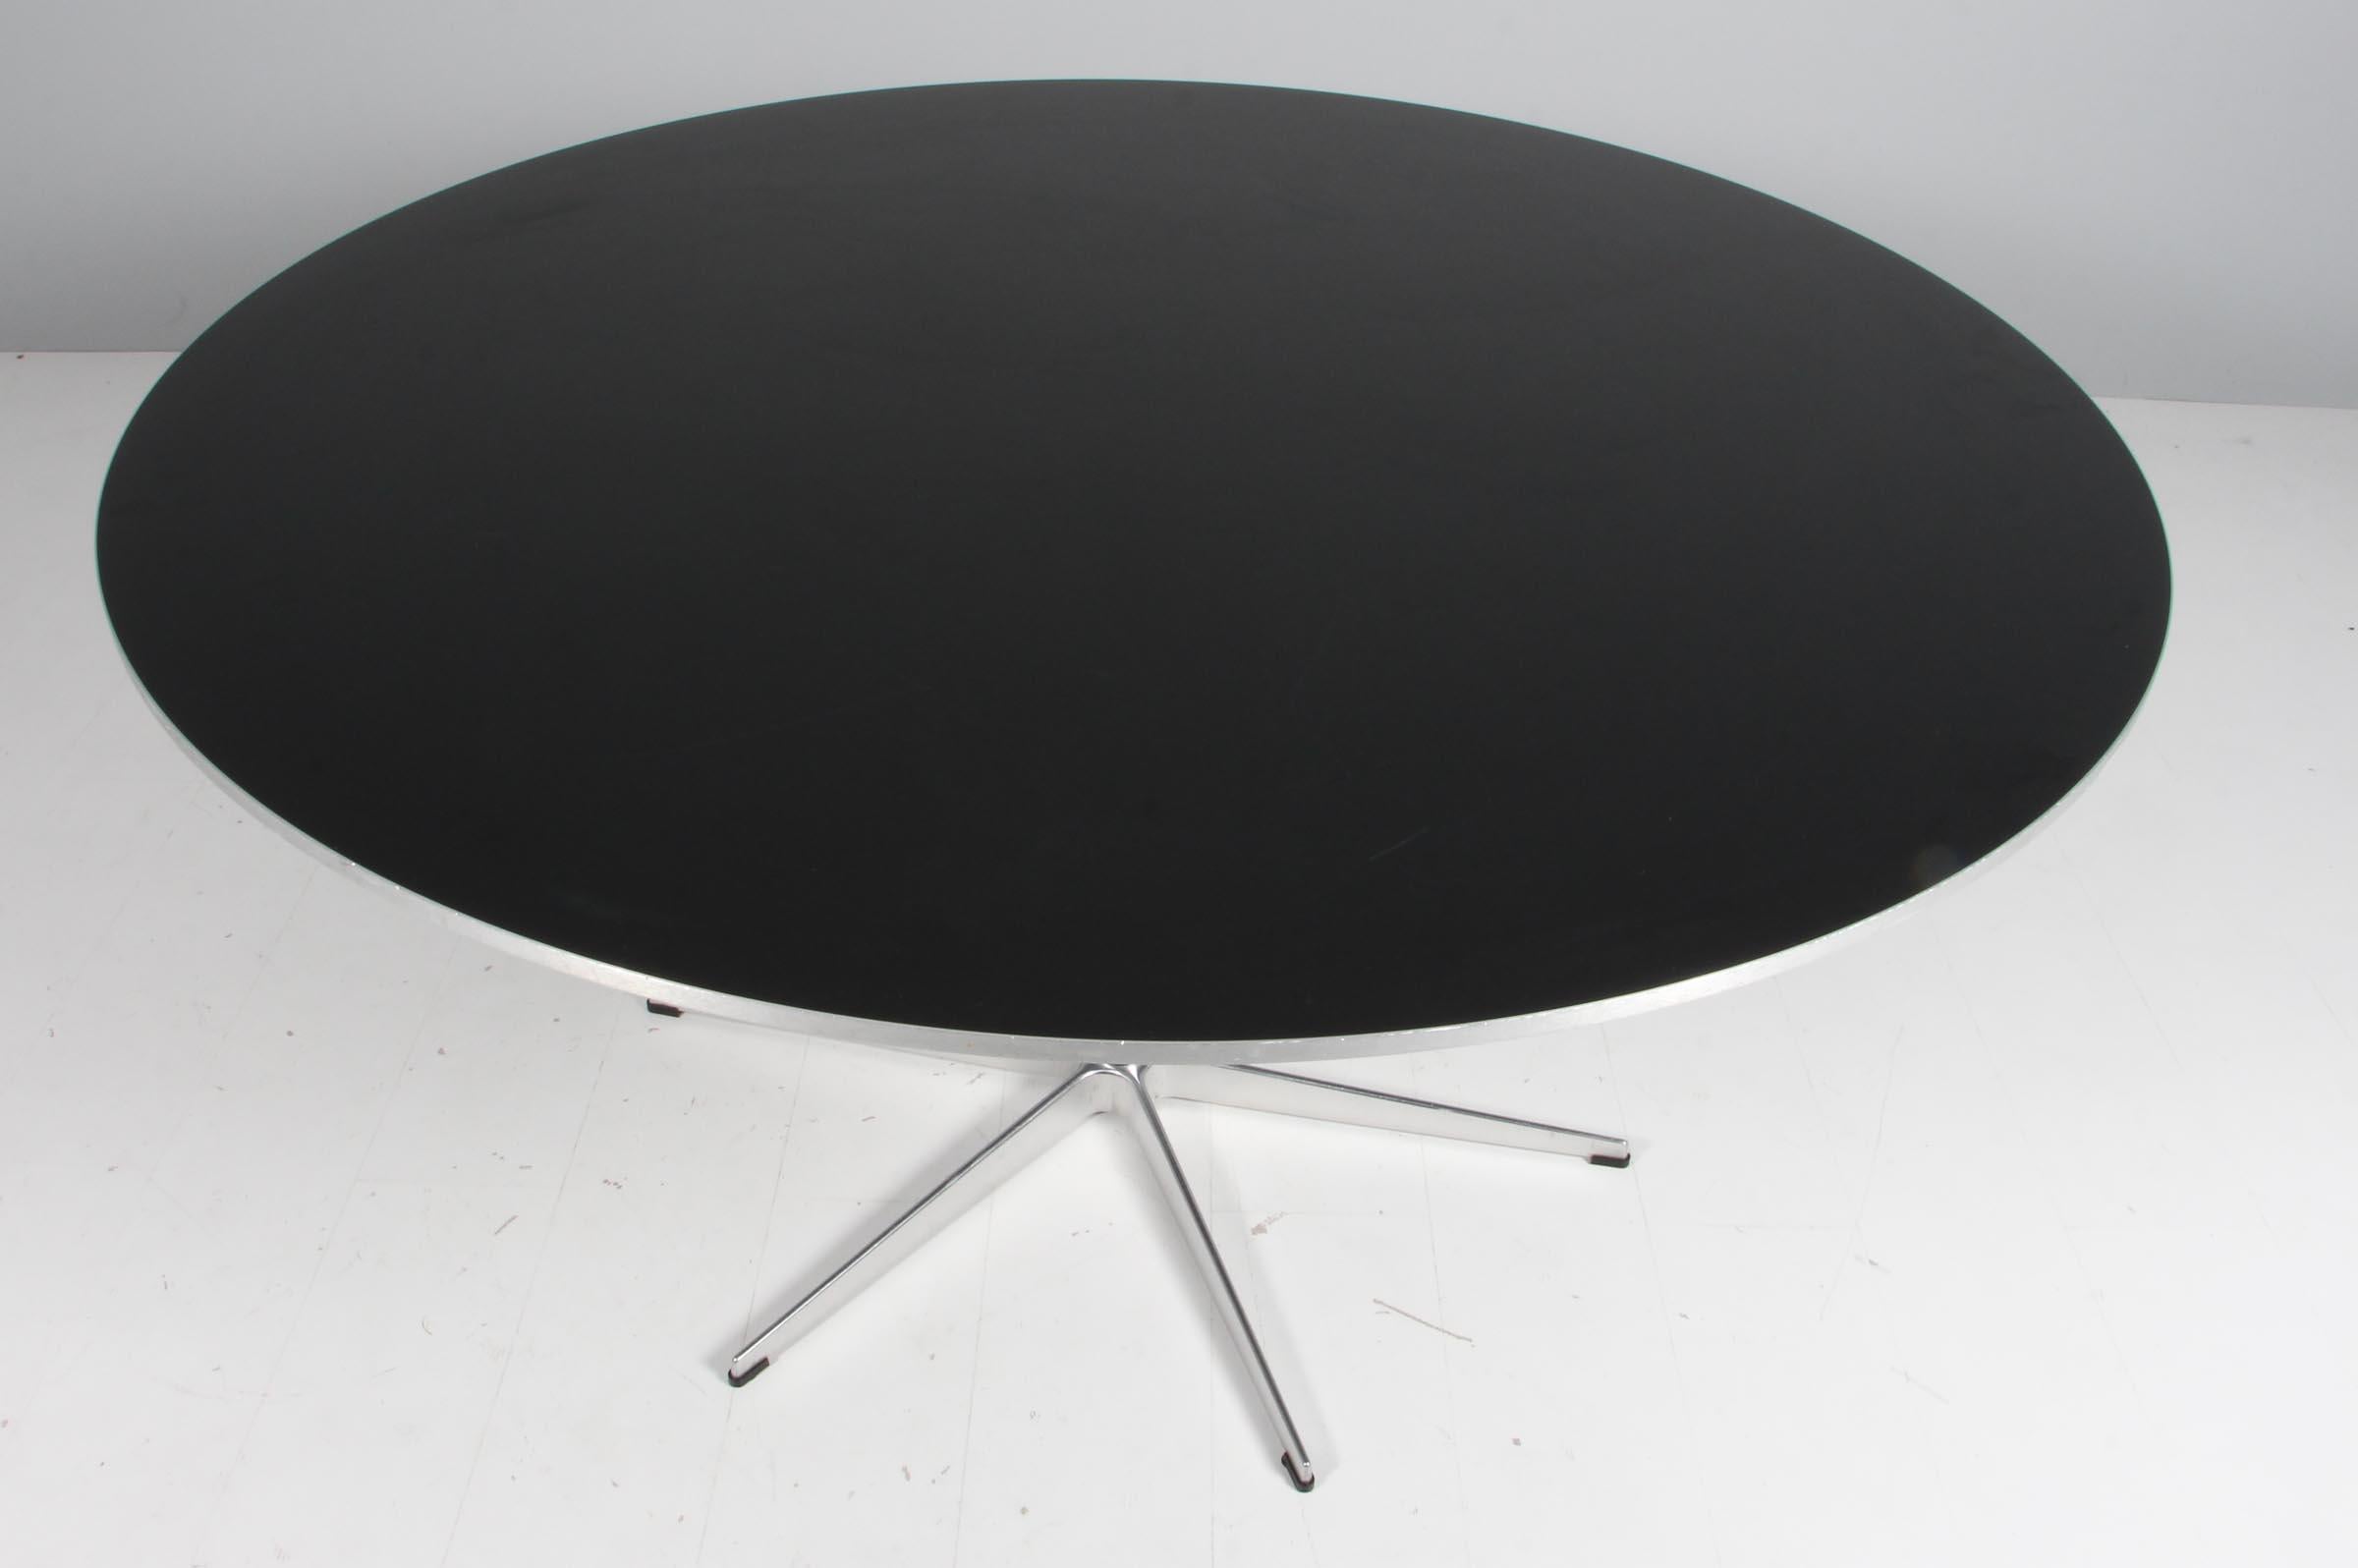 Table de salle à manger Piet Hein & Arne Jacobsen avec plateau en stratifié noir, côtés en alu.

Base à six étoiles en aluminium et en acier.

Fabriqué par Fritz Hansen.